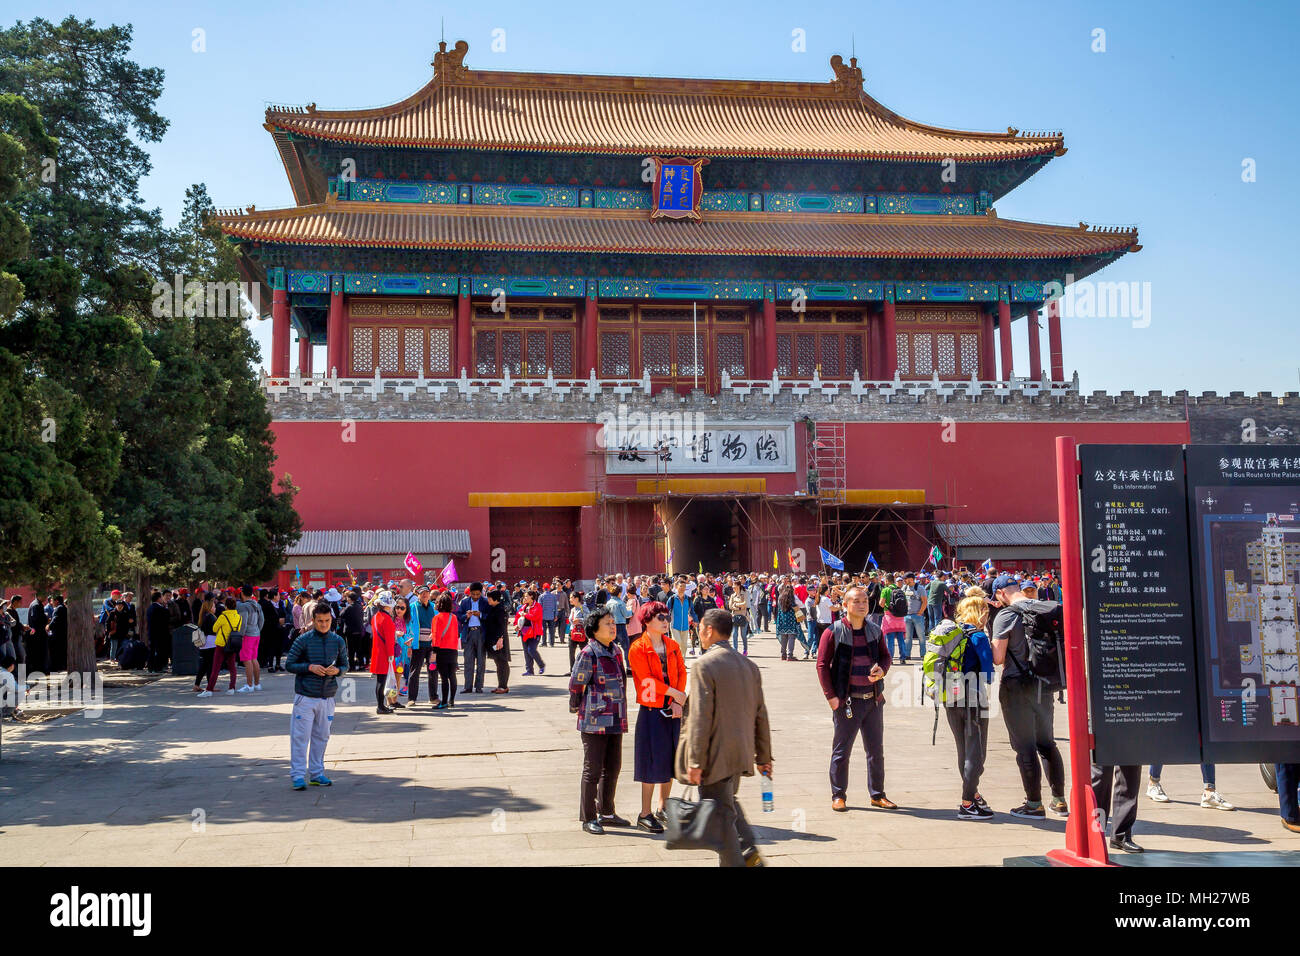 Palace Museum, la Città Proibita di Pechino, Cina - folle di turisti si riuniscono presso la porta della Divina potrebbe. Gli operai sono le riparazioni sopra l'uscita. Foto Stock